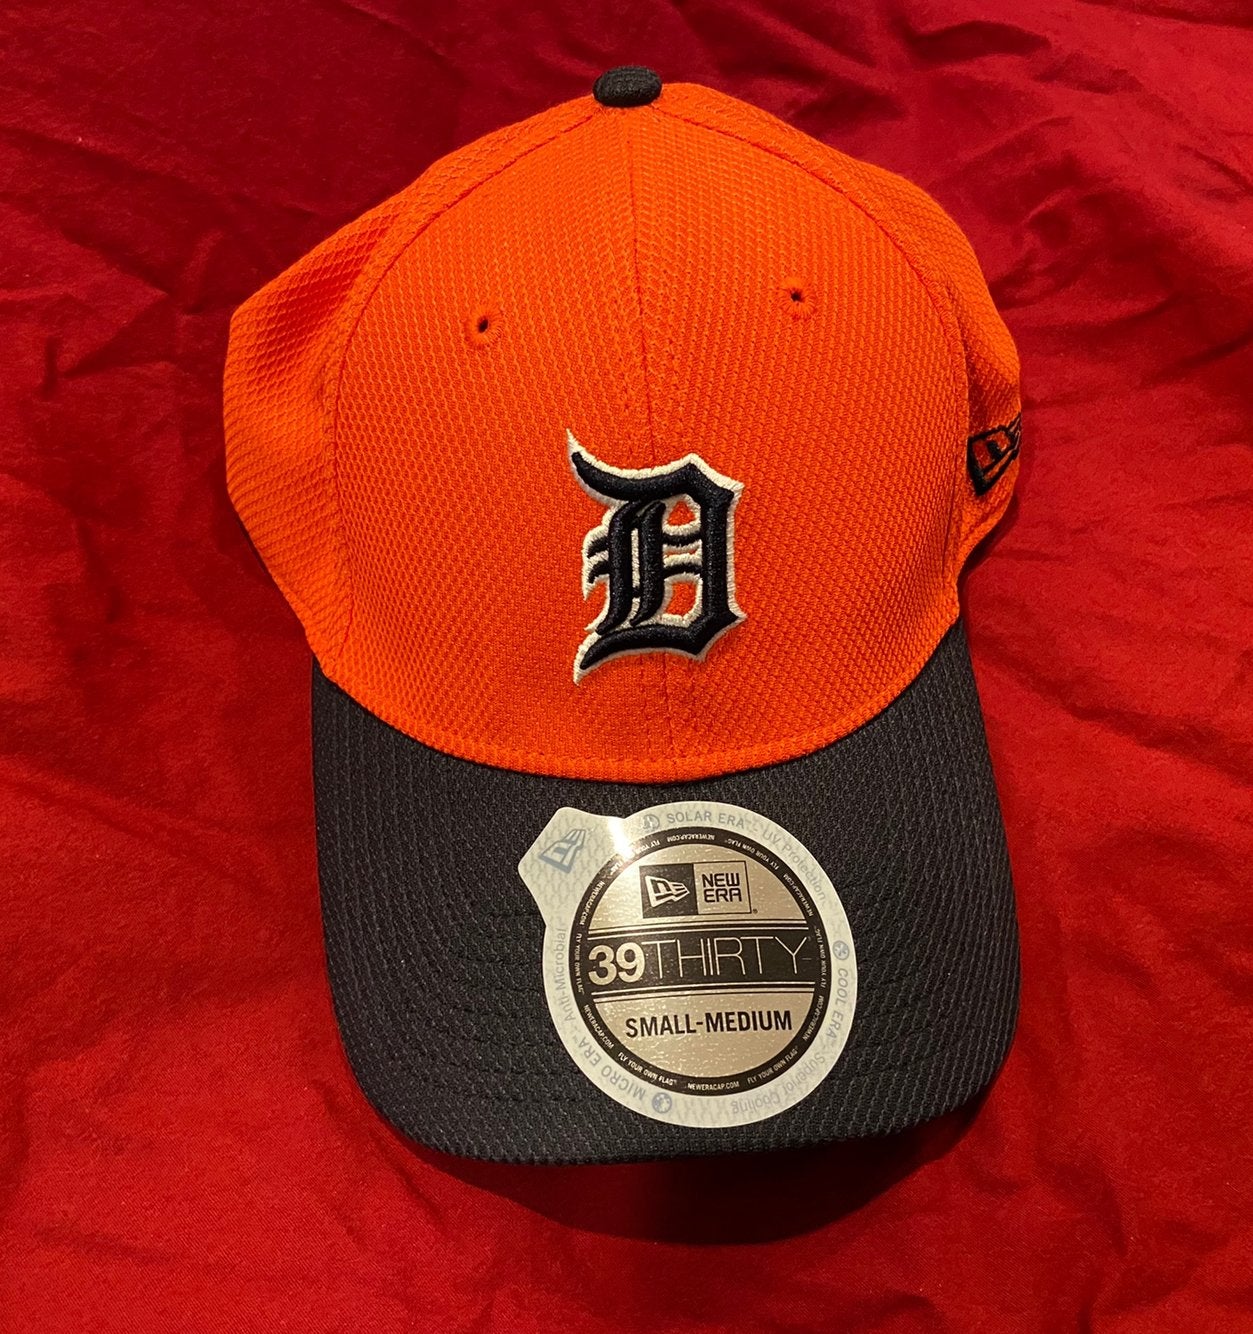 Detroit Tigers 47 Brand Navy Bucket Hat - Detroit Game Gear